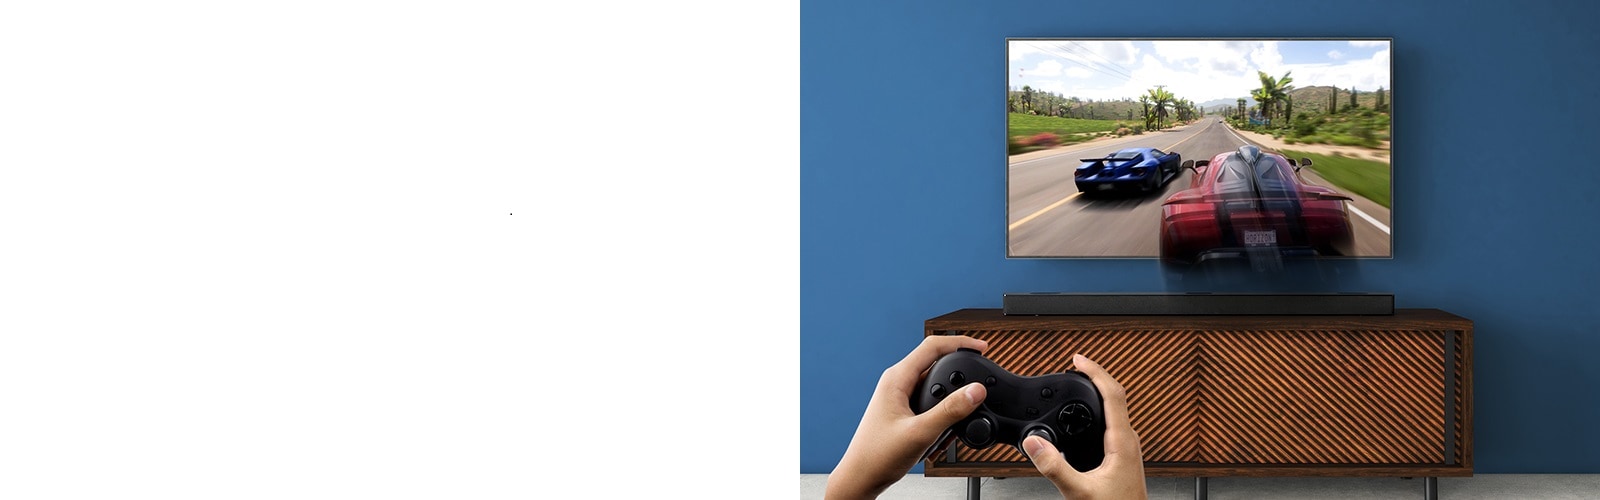 LG TV nalazi se na zidu i na njemu se prikazuje videoigra s utrkama. LG Sound Bar nalazi se na smeđoj polici, odmah ispod LG televizora. Muškarac drži igraću palicu. Oznaka NOVO prikazana je u gornjem lijevom kutu.